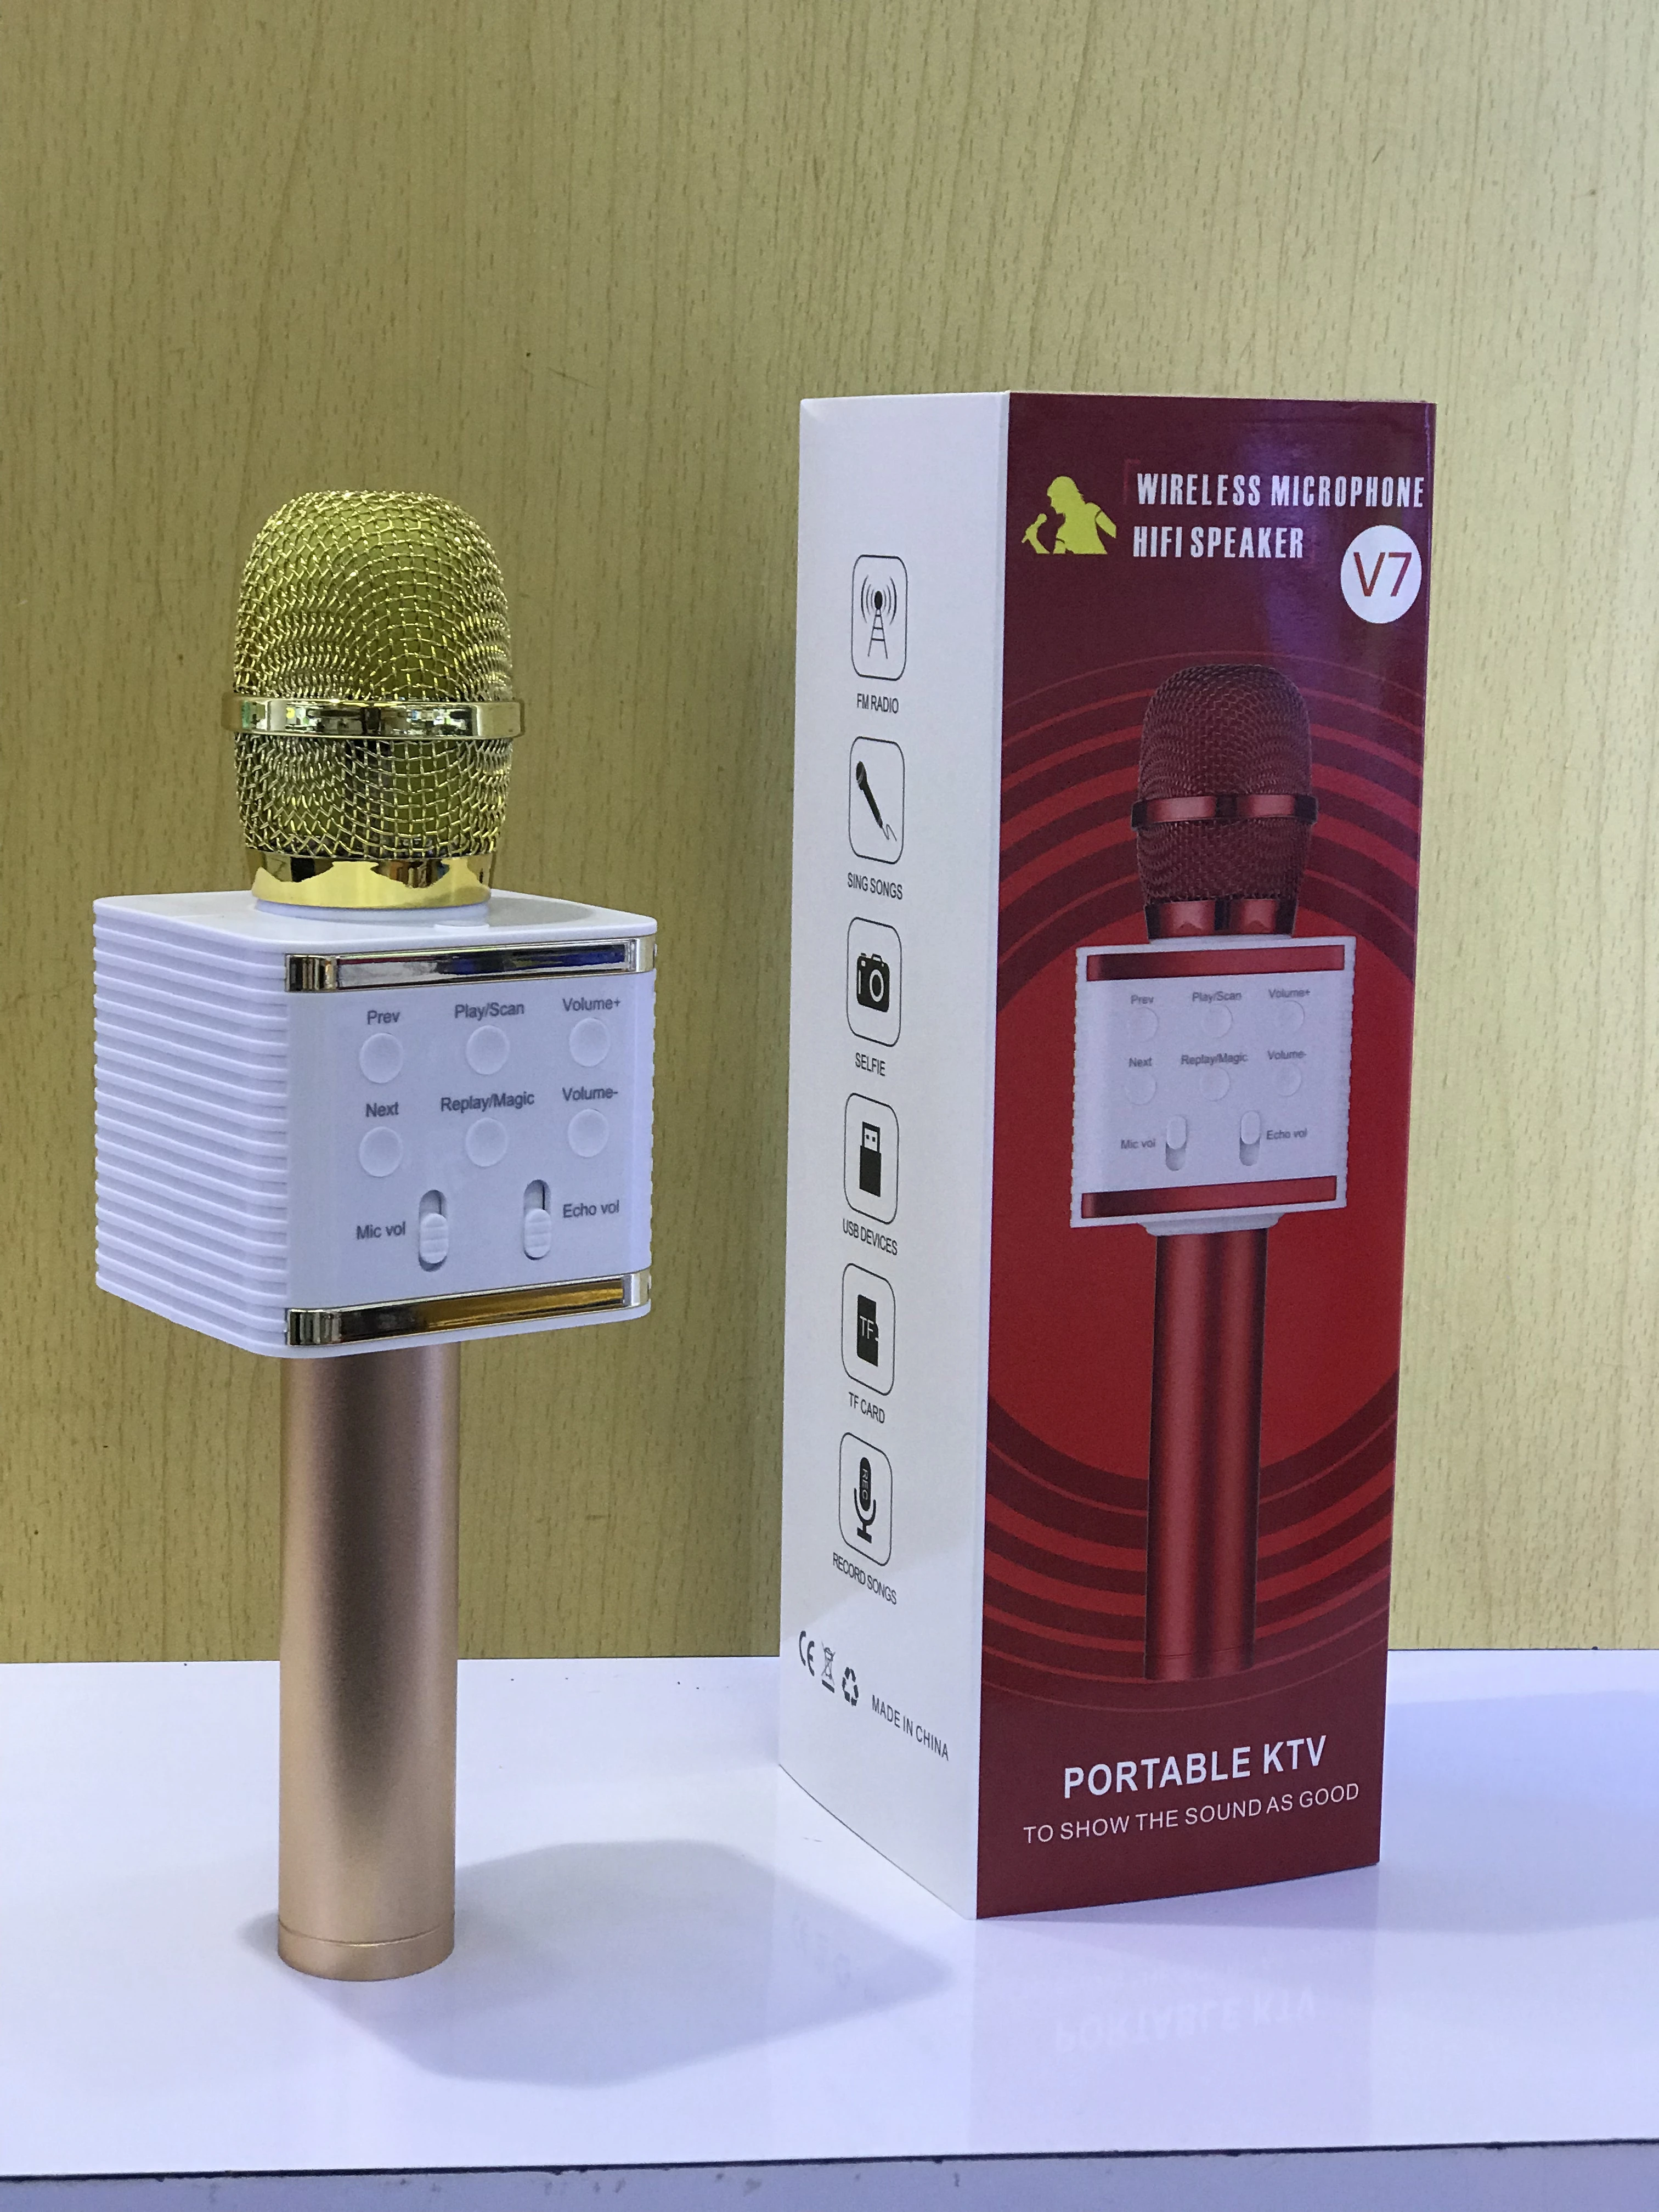 Hot Selling KTV V7 wireless microphone Handheld Mic Speaker USB Portable BT Wireless speaker Karaoke Microphone for Mobile Phone